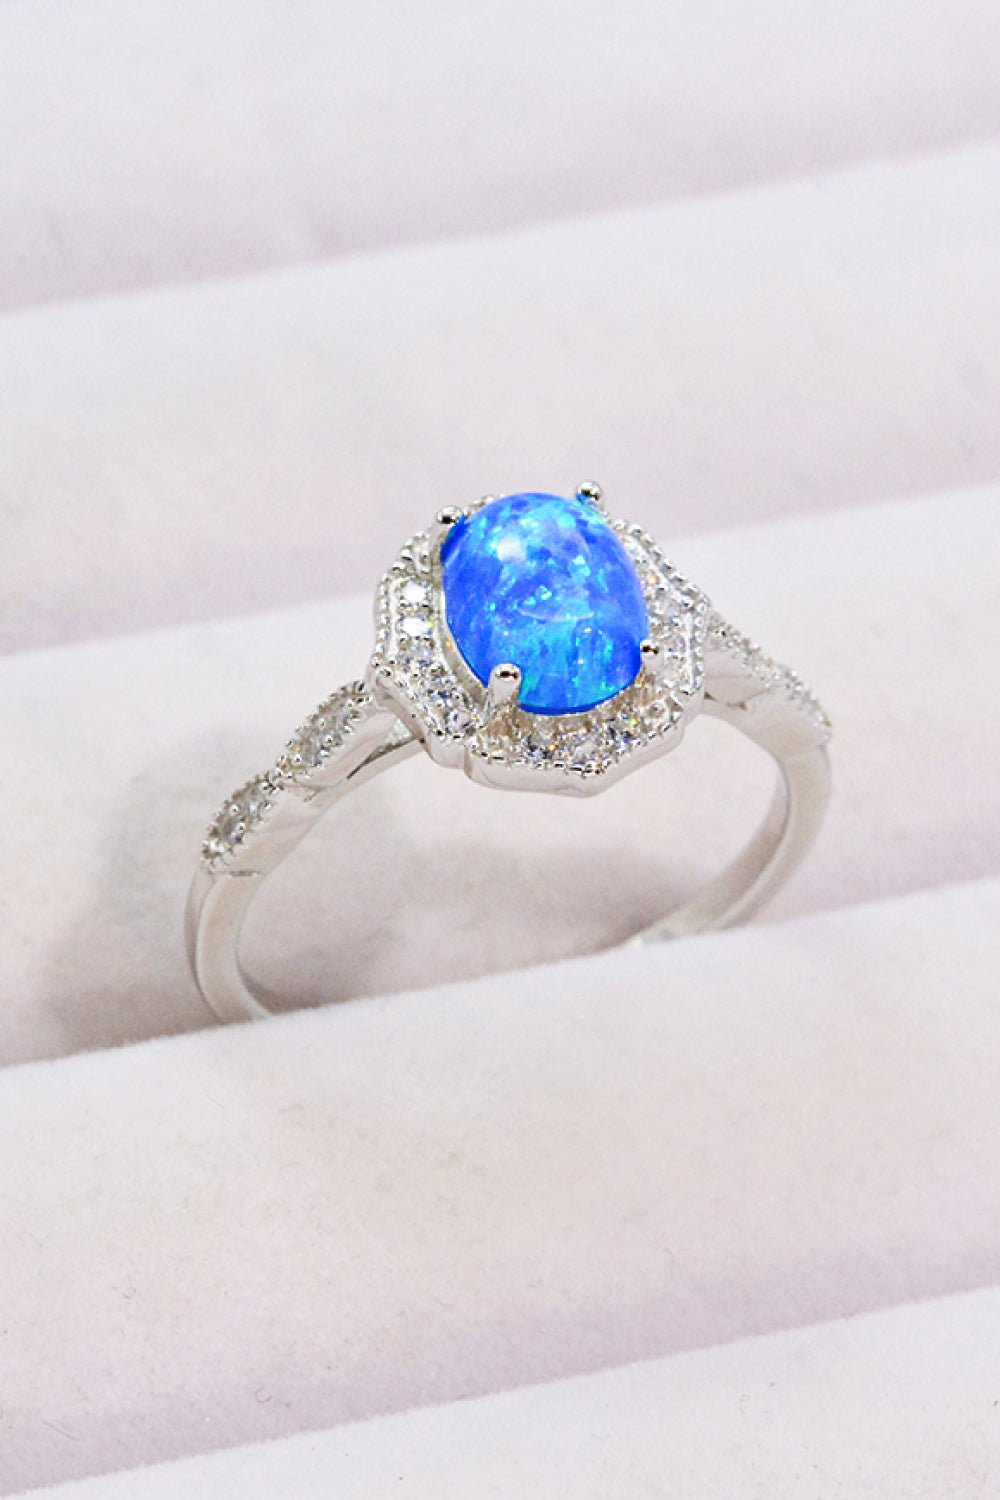 Blue Opal and Zircon Ring - Tangerine Goddess